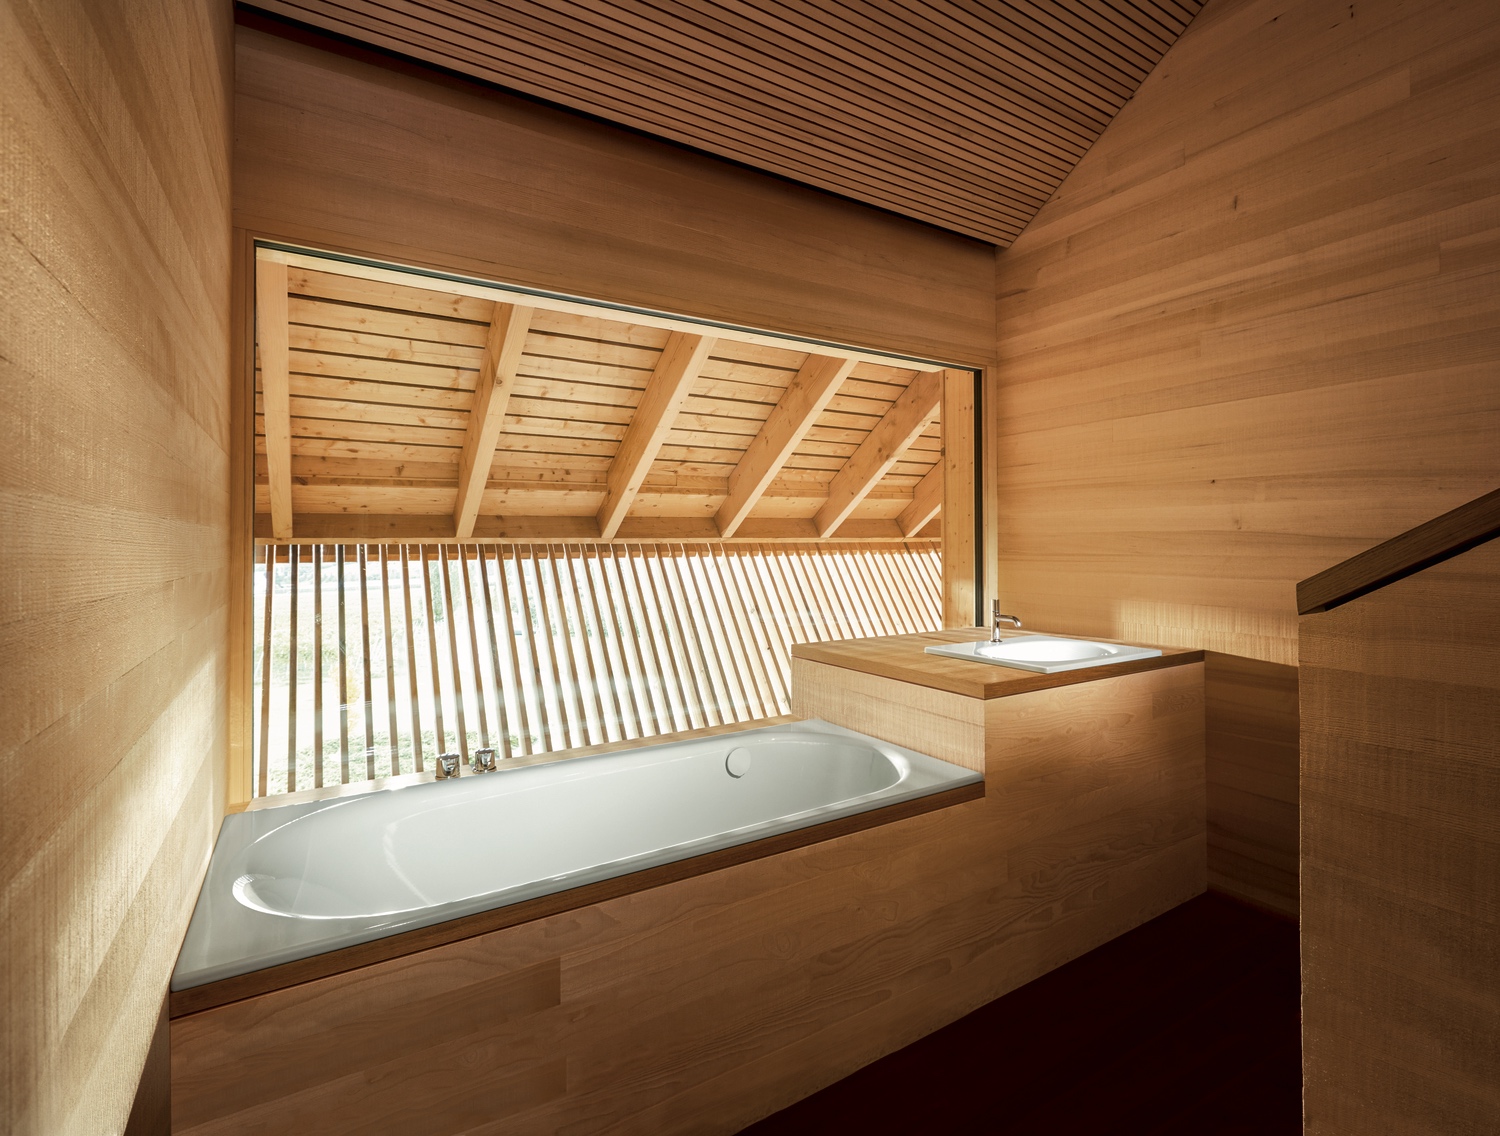 Bette Badewanne mit seitlichem Überlauf „BetteComodo“ rechteck 170 × 80 cm in Weiß, Farbe (Außenseite)#, mit seitlichem Überlauf